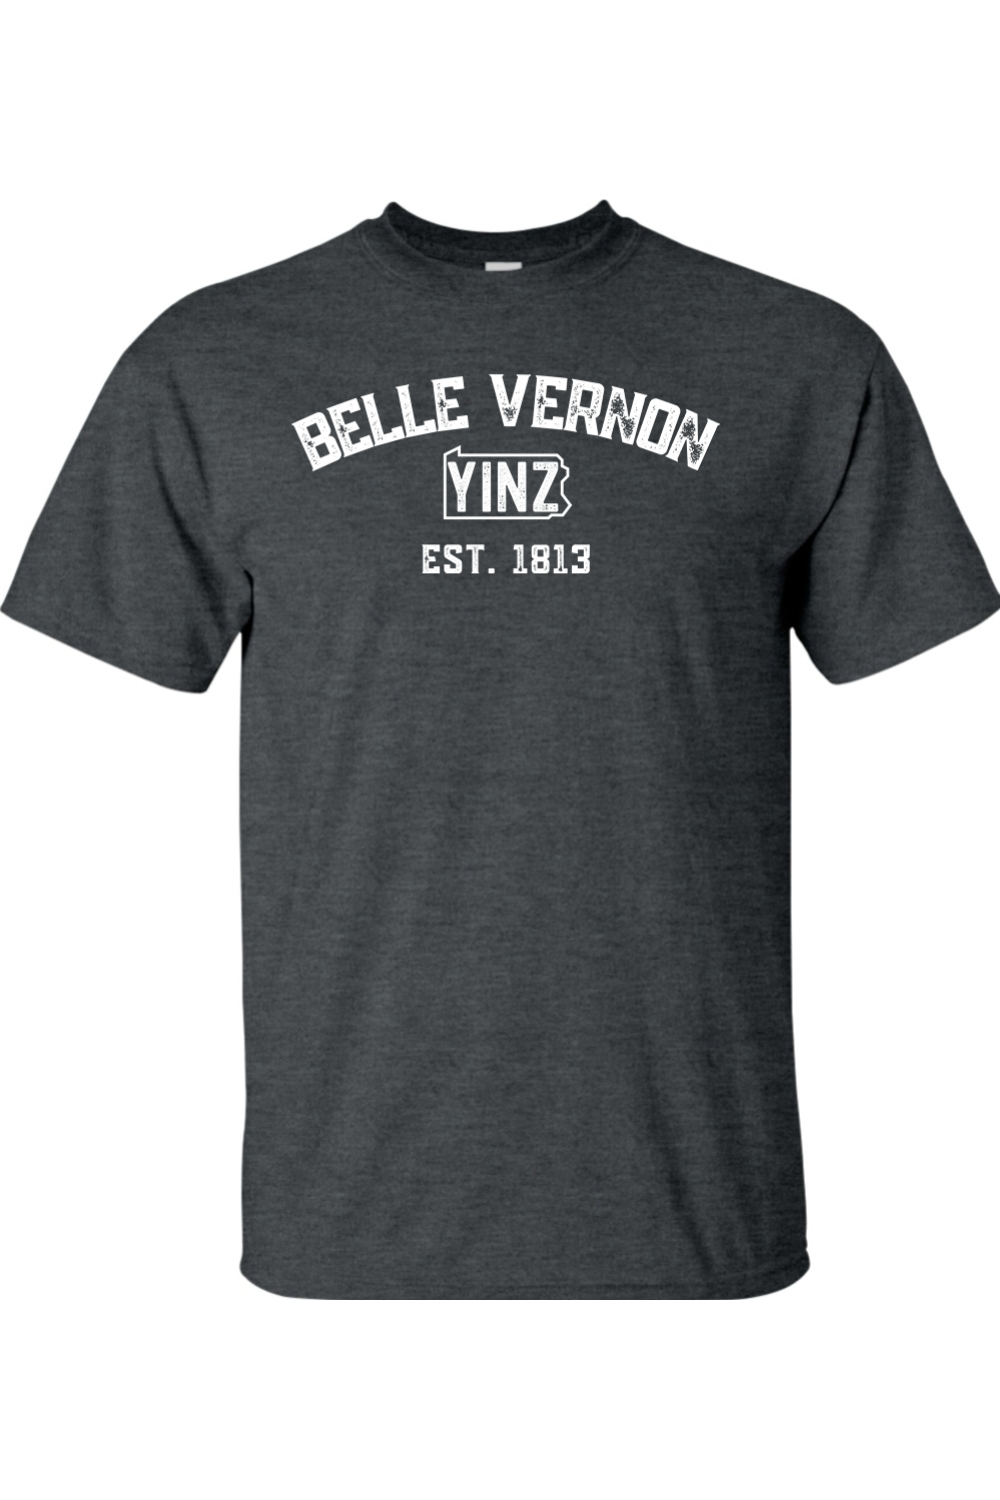 Belle Vernon Yinzylvania - 4XL & 5XL T-Shirt - Yinzylvania